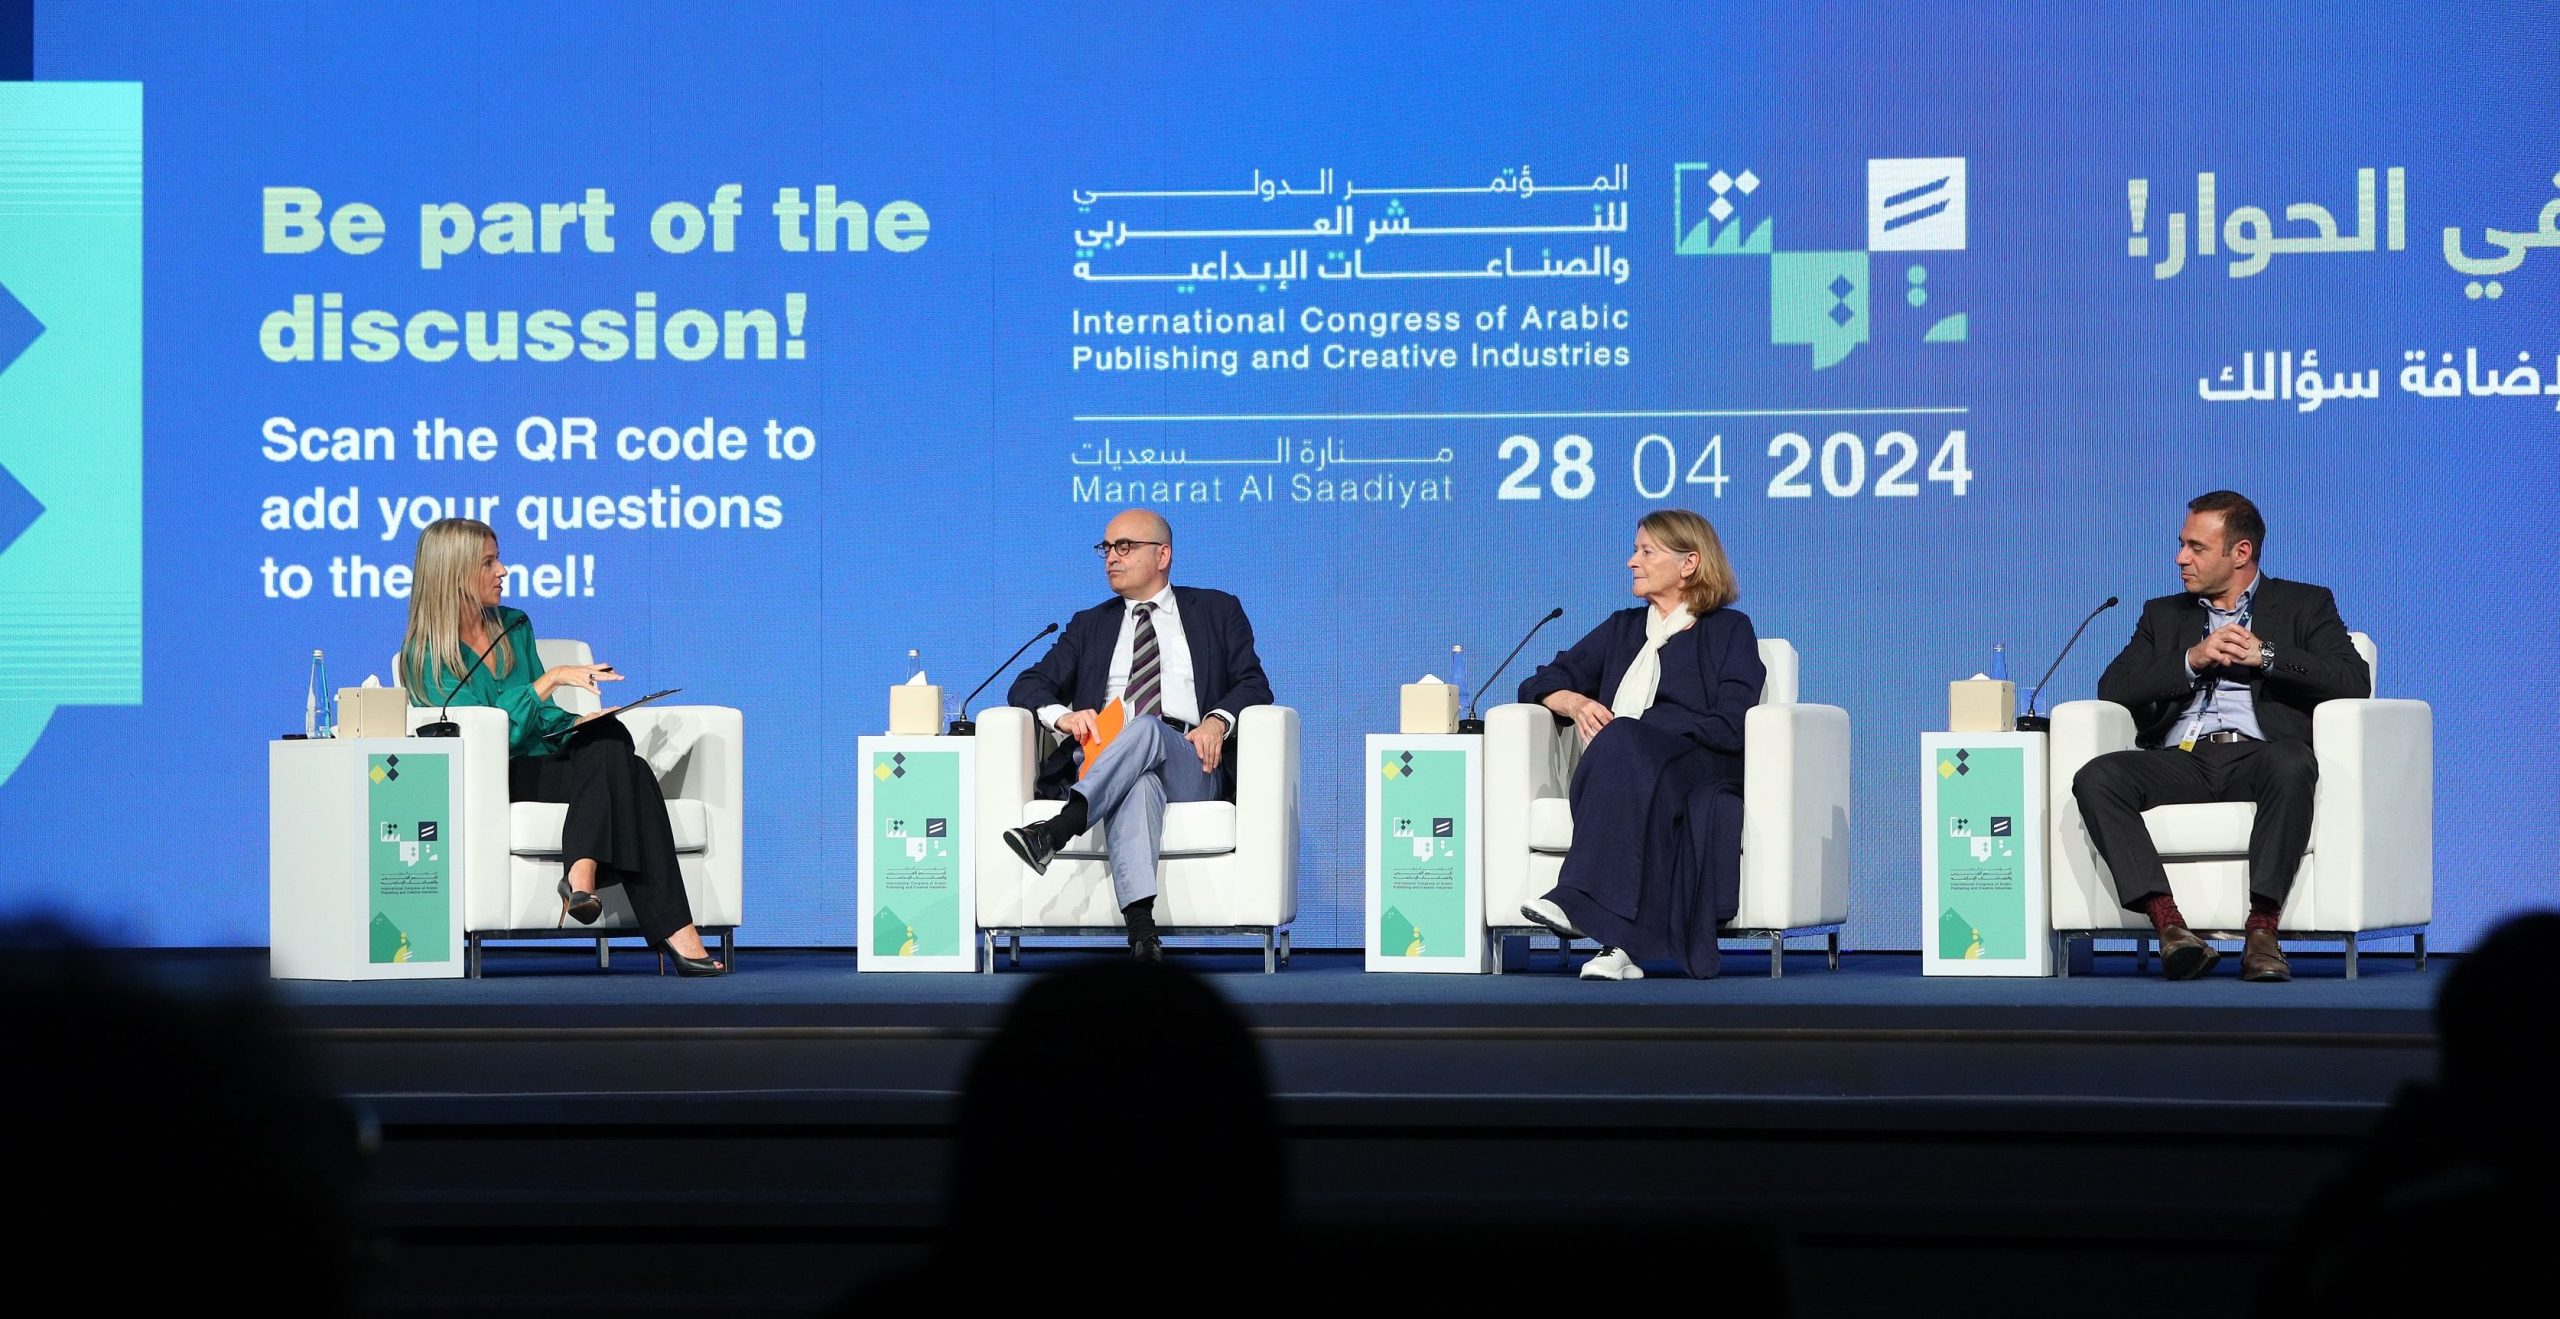 المؤتمر الدولي للنشر العربي والصناعات الإبداعية يوصي بضرورة الاستثمار